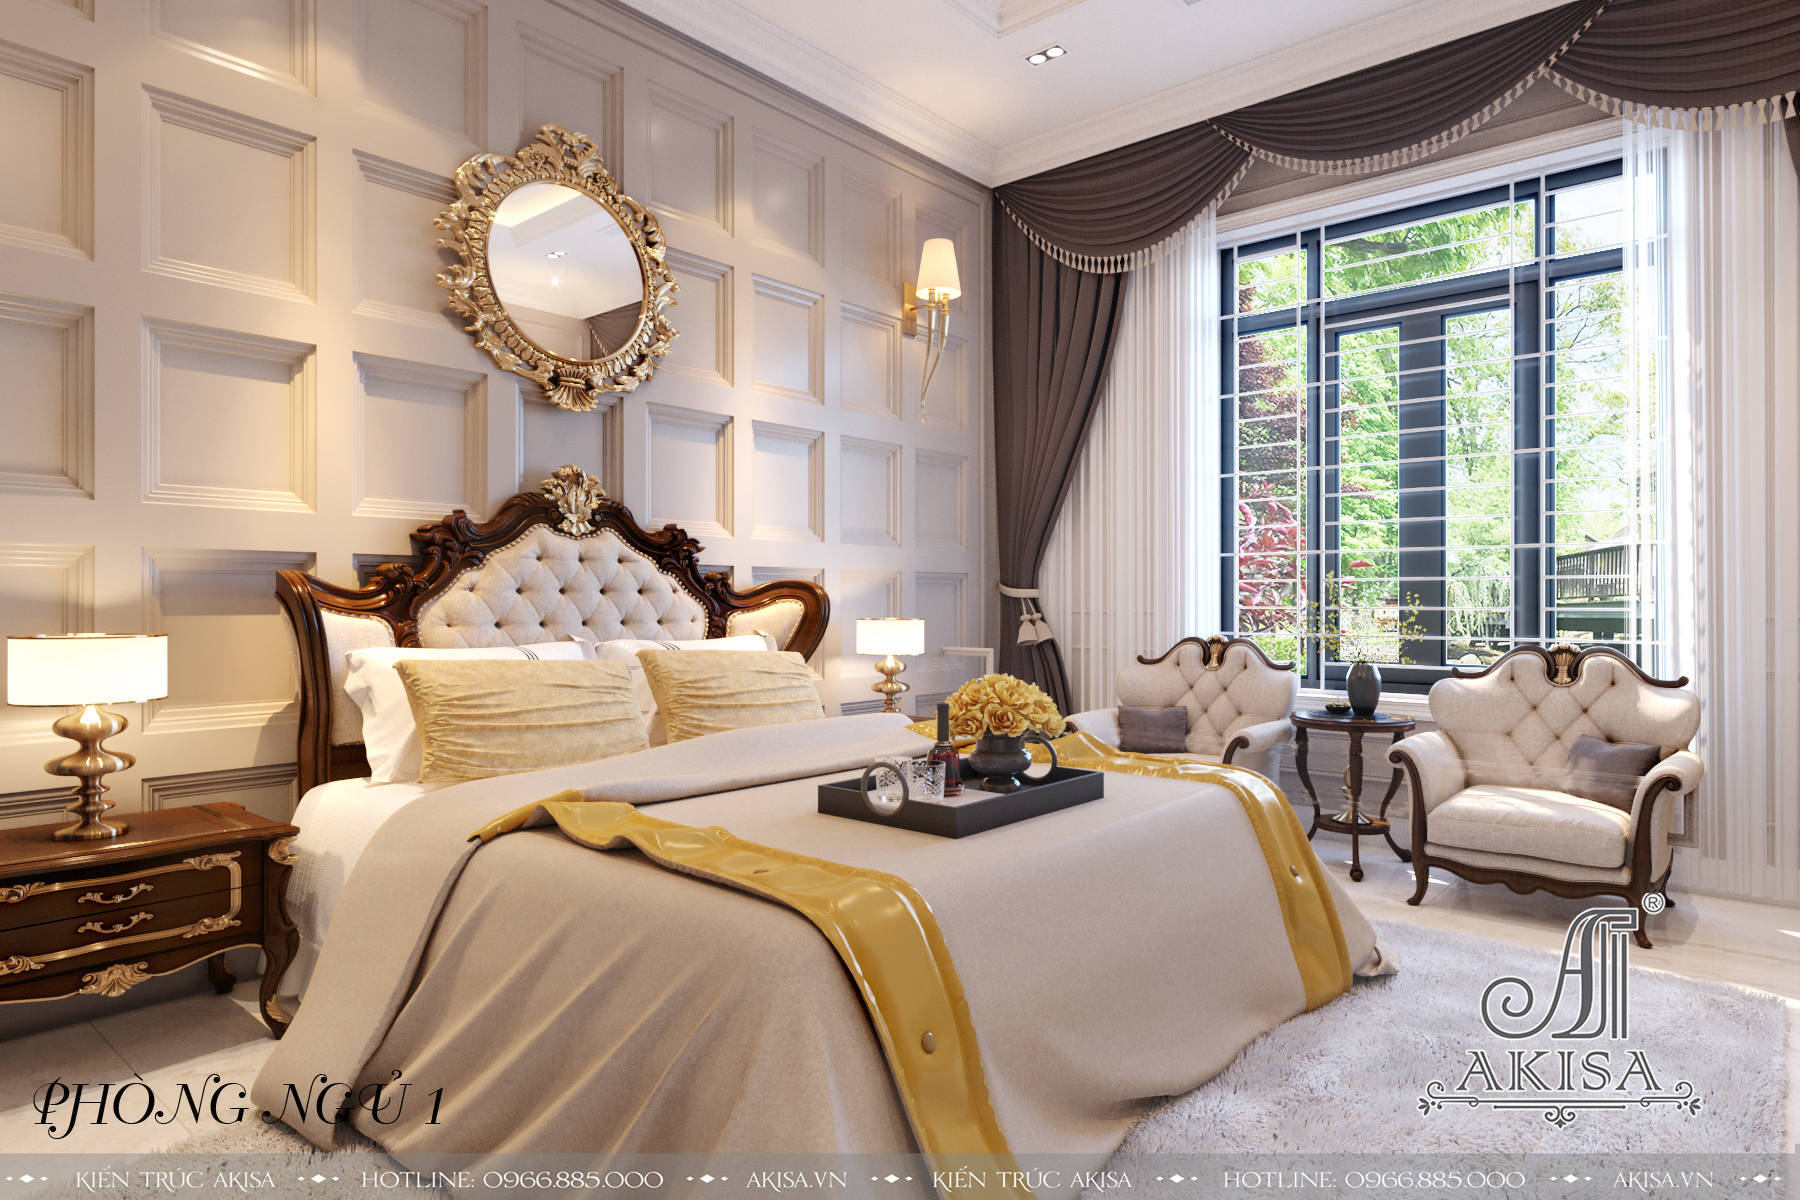 Phòng ngủ thiết kế tông màu vàng trắng sang trọng, chú trọng sự tiện nghi, tối ưu không gian, thể hiện cá tính của chủ nhân.